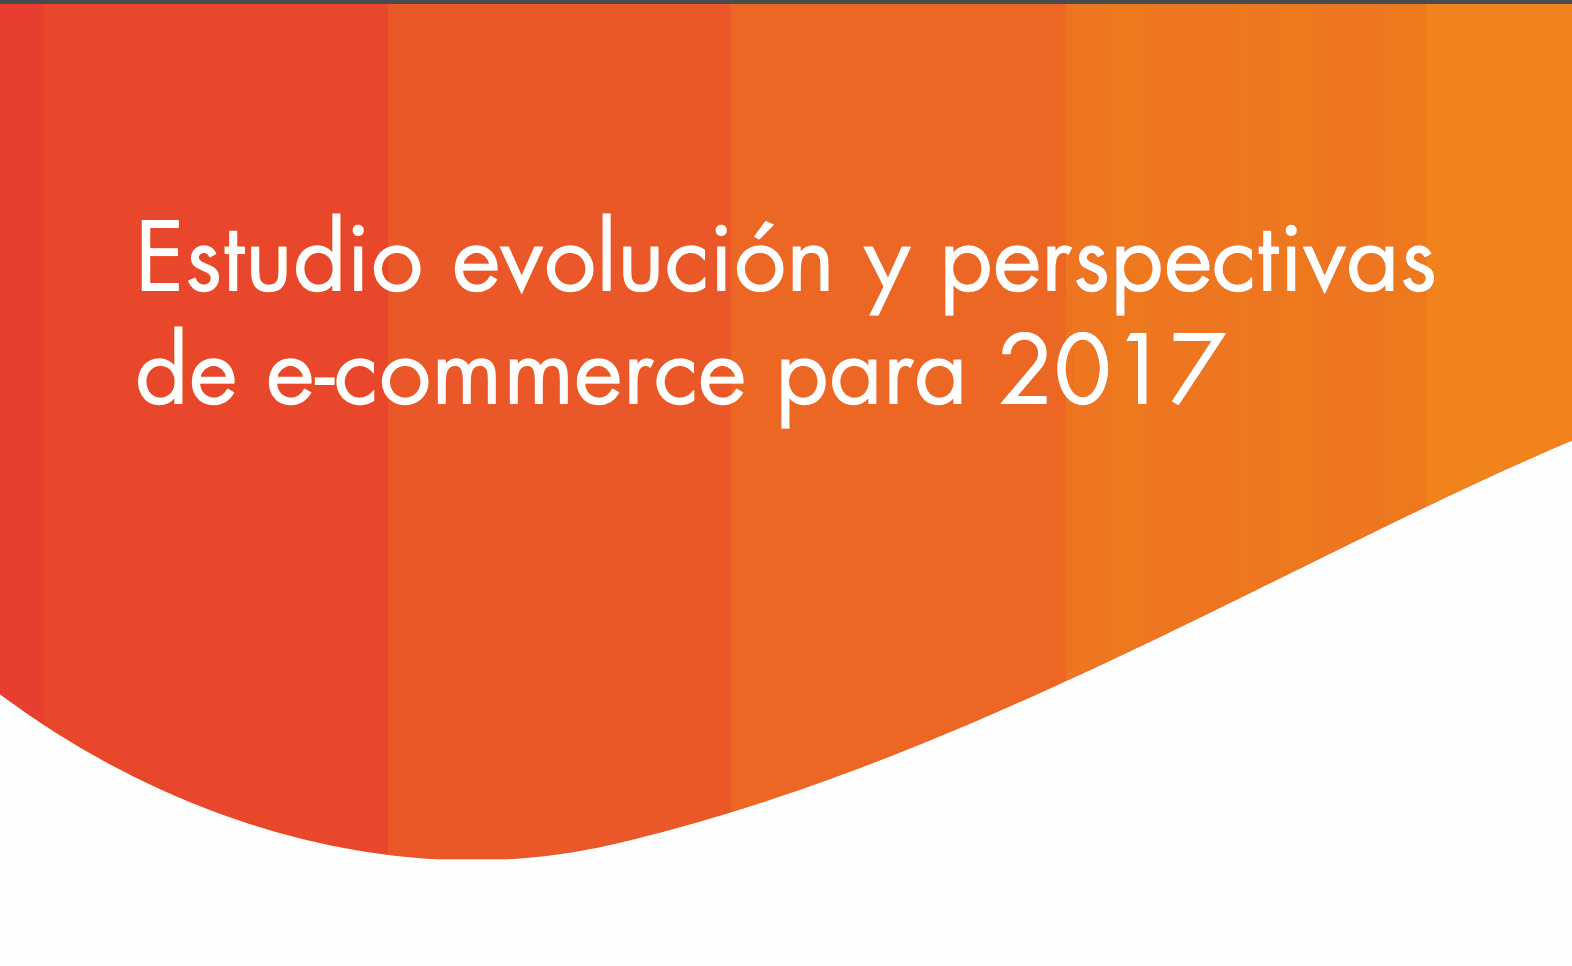 Estudio Evolución y perspectivas e-commerce 2017